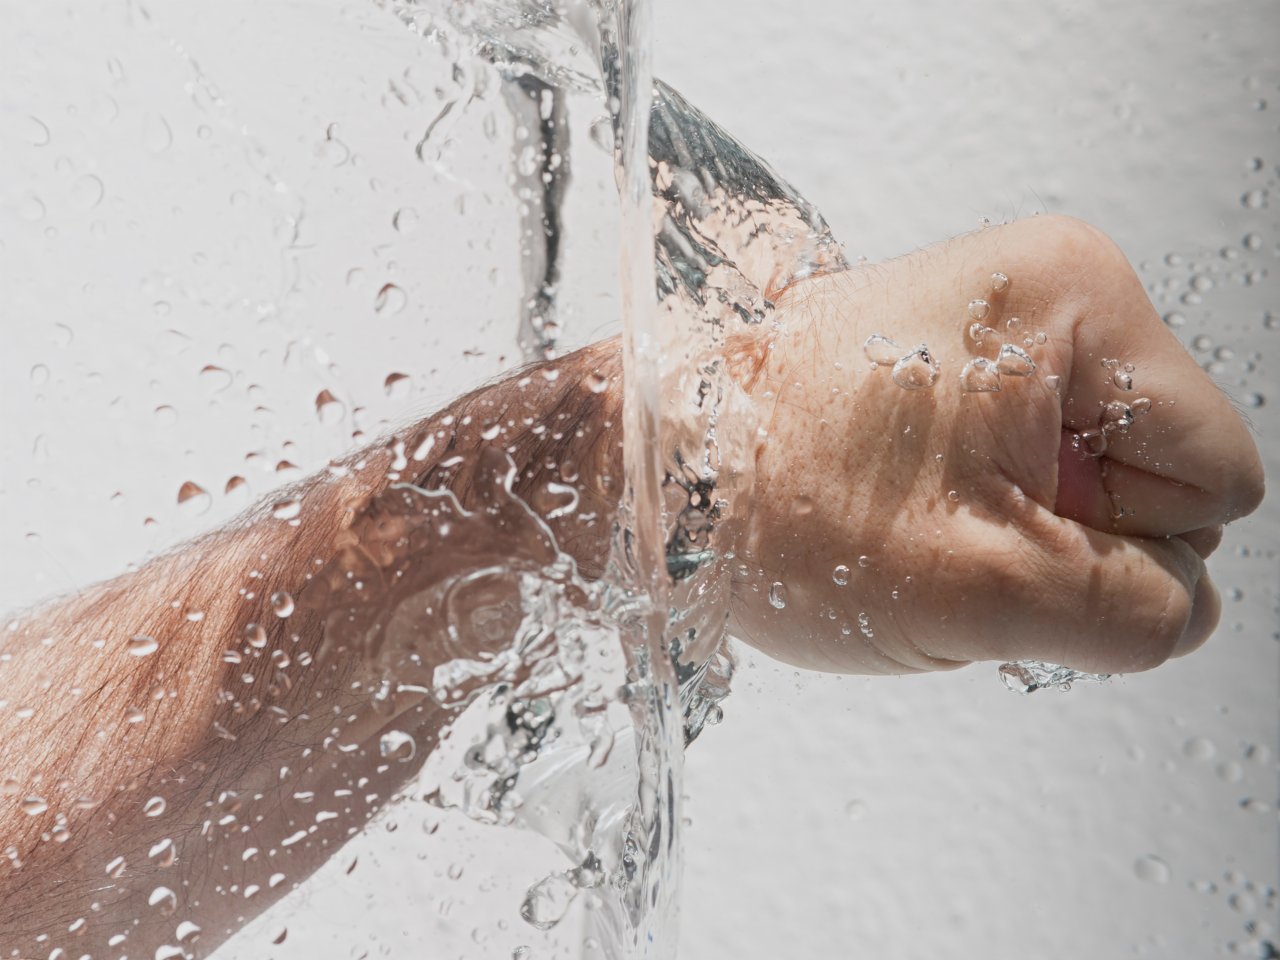 Hände waschen hilft dir nicht, wenn du dein kontaminiertes Handy danach wieder anfässt.